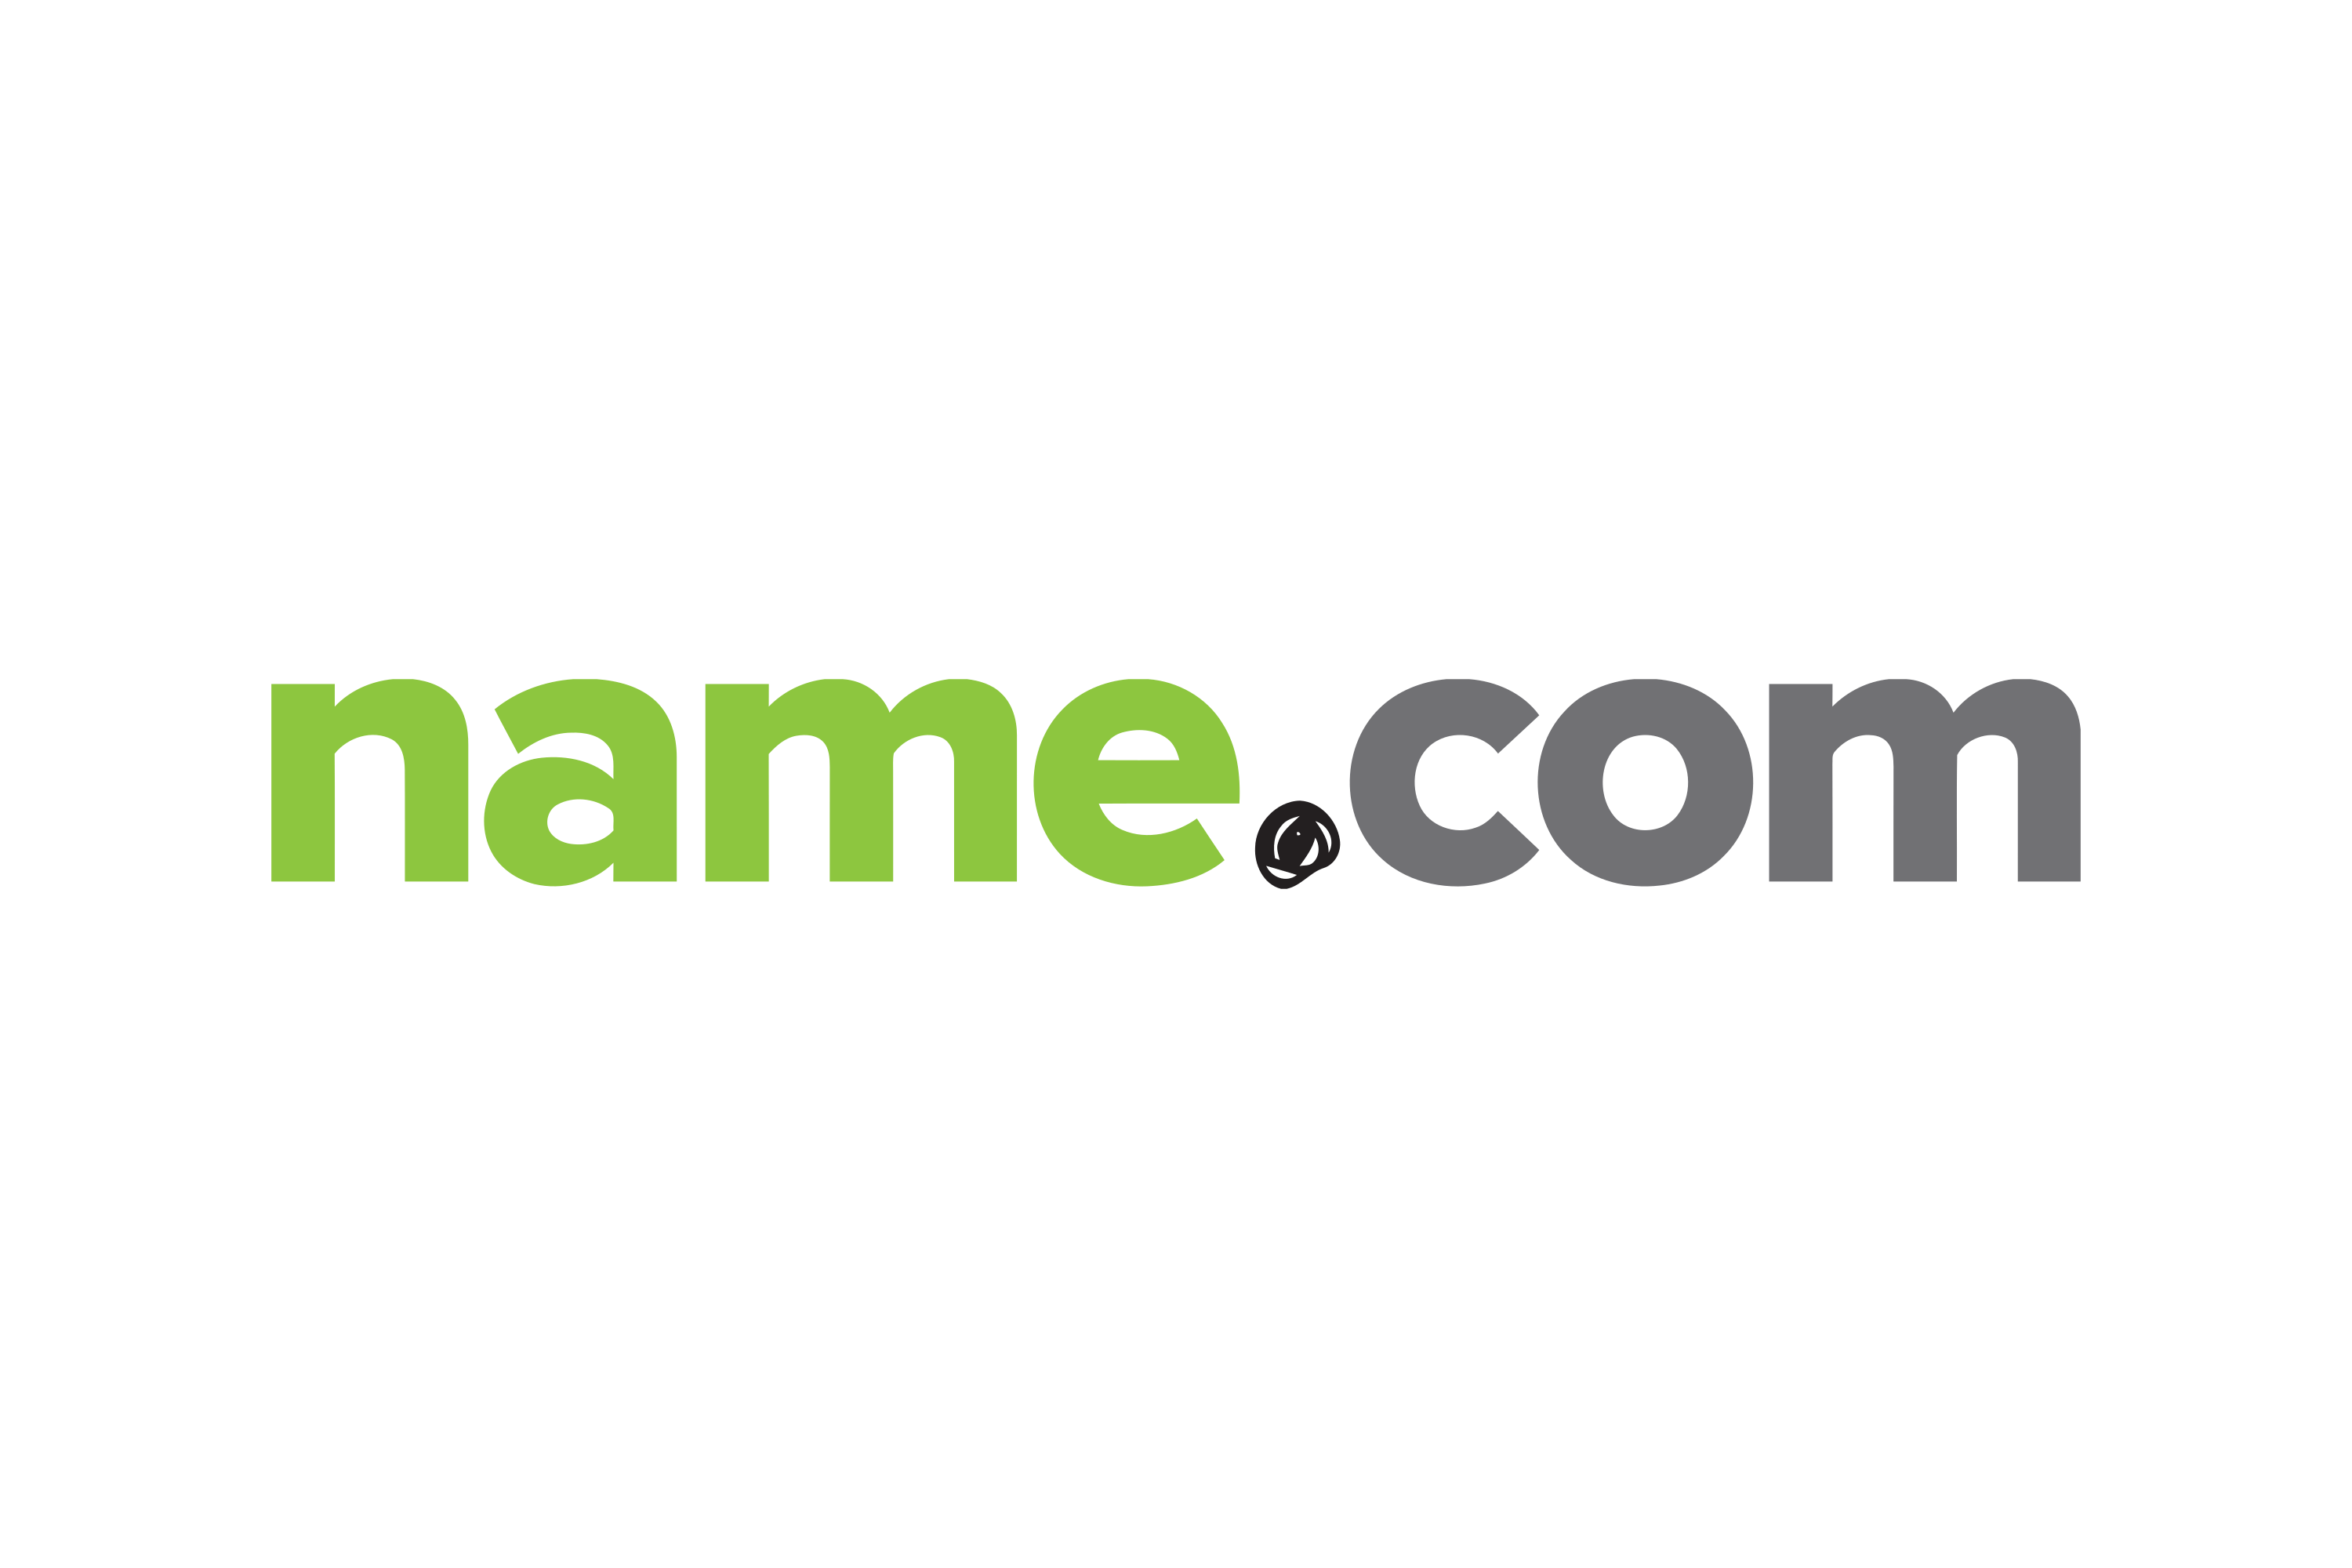 Name.com. The names. Ivacom логотип. Логотип for name. Checkyour name com сайт